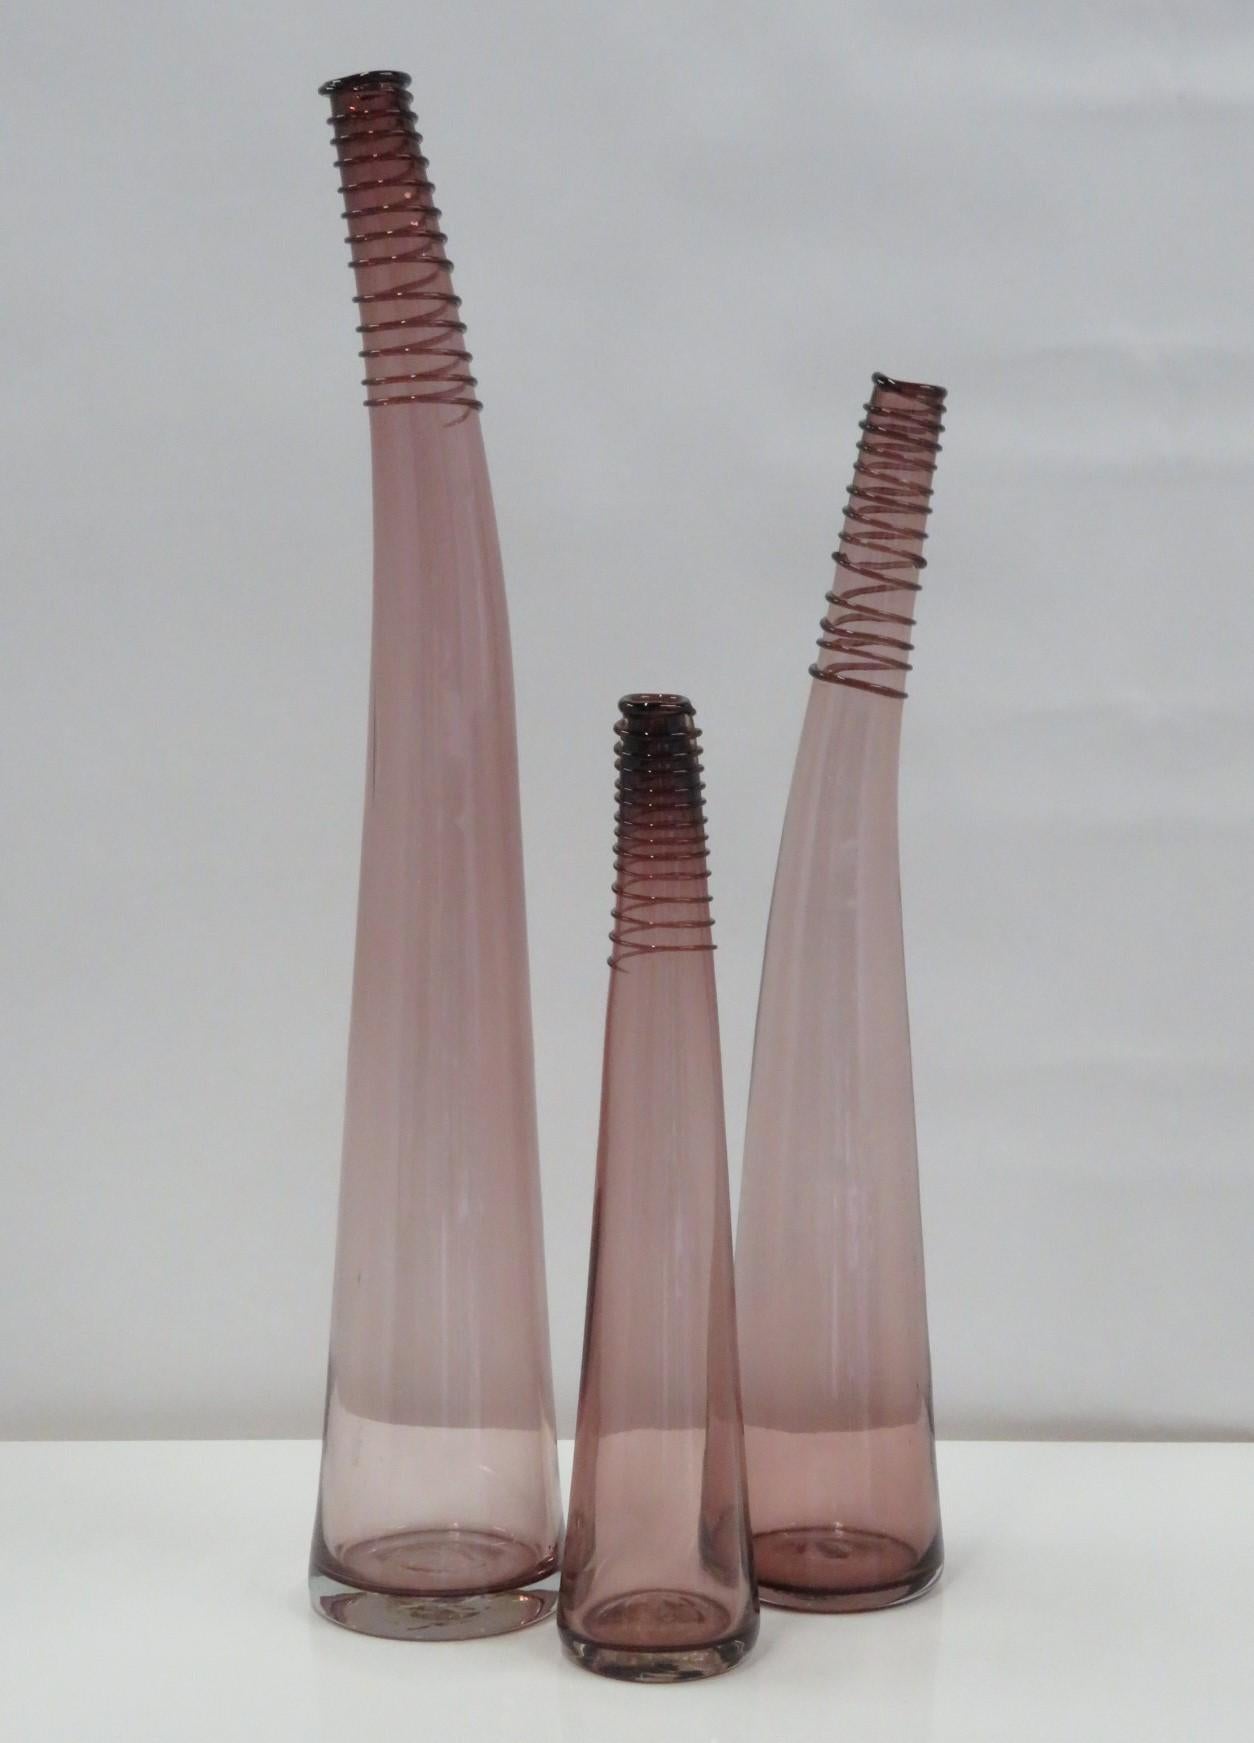 Blenko 3er-Set gebogener Flaschenvasen mit spiralförmigem Hals, in drei Höhen, geschaffen von Don Shepherd 1988. Dieser Entwurf wird erstmals im Blenko-Katalog von 1988 aufgeführt und erhält die Nummer 8827 l/m/s, je nach Höhe des Schiffes. Schöne